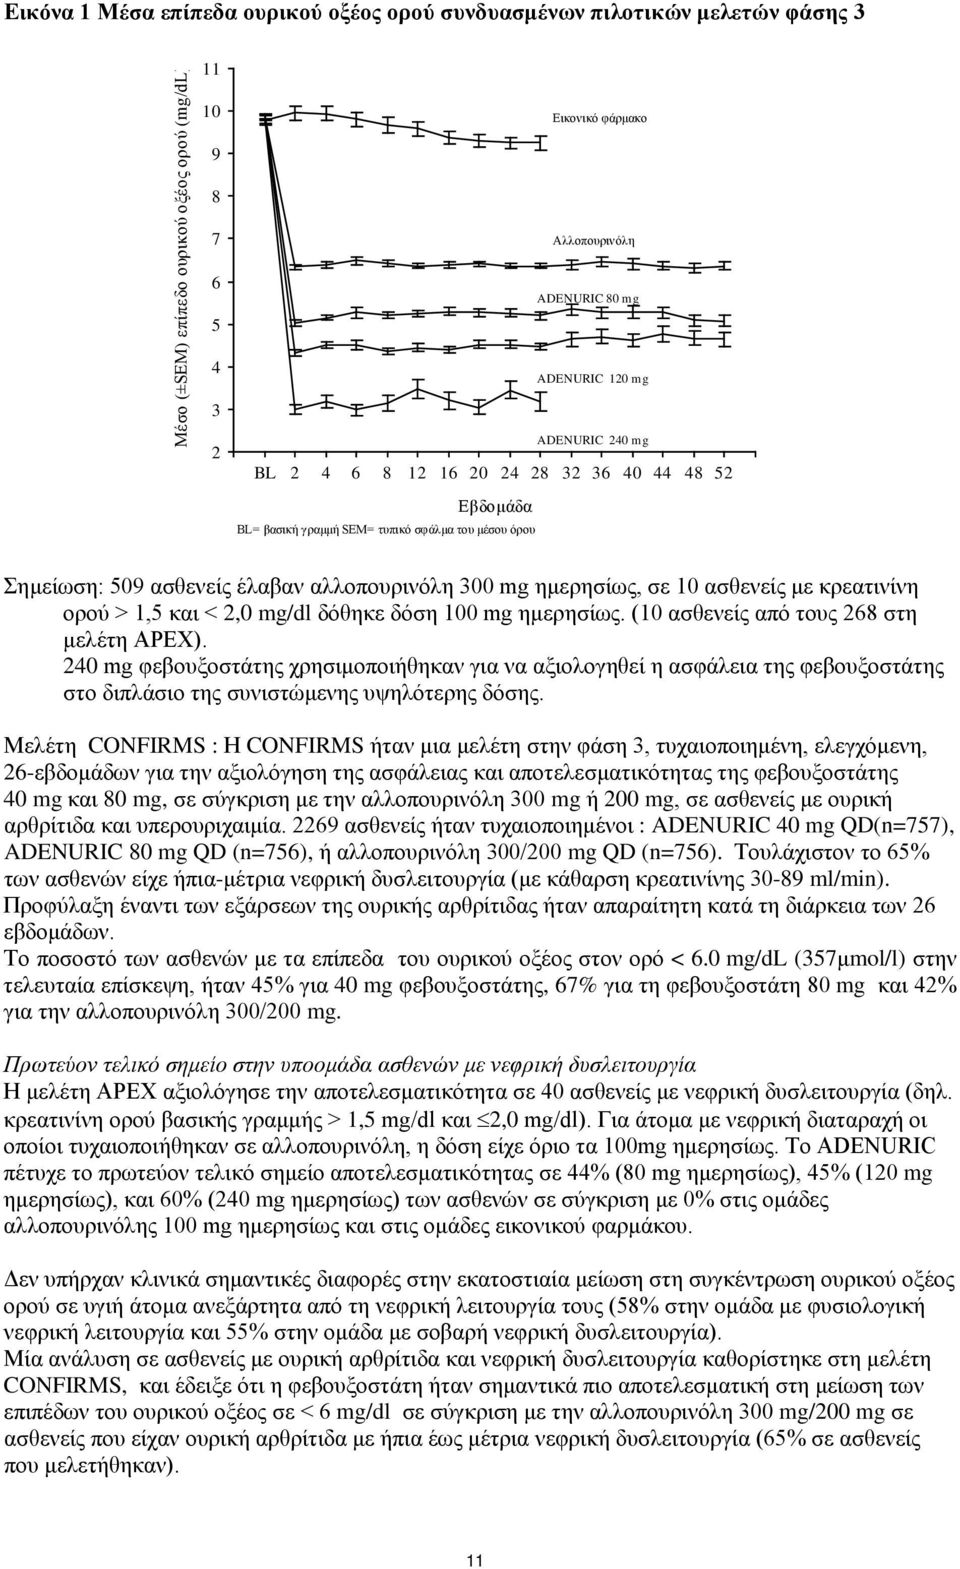 σε 10 ασθενείς με κρεατινίνη ορού > 1,5 και < 2,0 mg/dl δόθηκε δόση 100 mg ημερησίως. (10 ασθενείς από τους 268 στη μελέτη APEX).